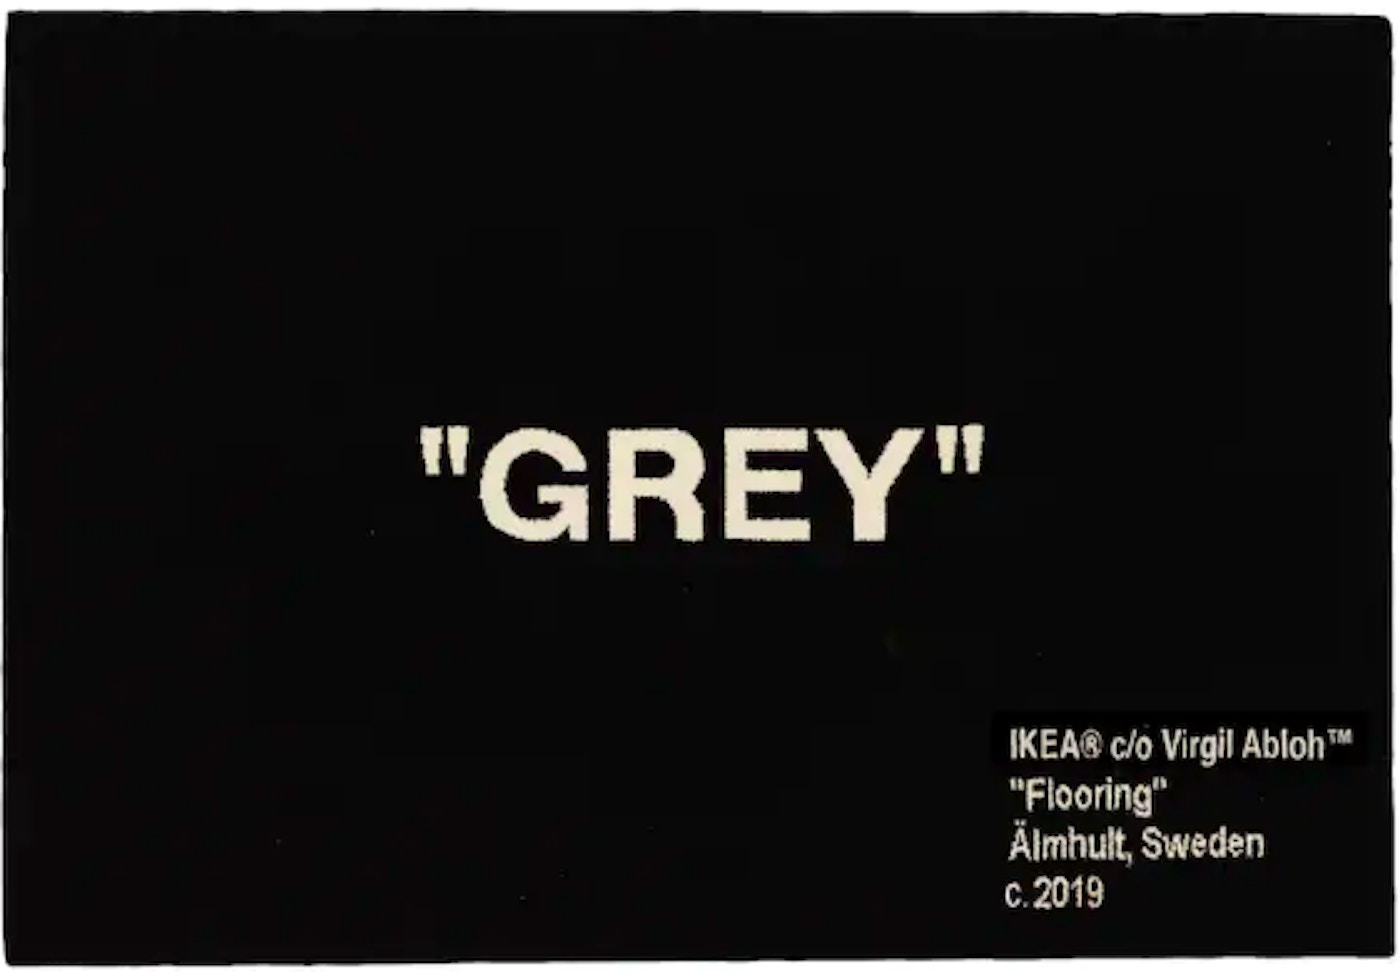 Abloh x IKEA "GREY" Rug CM Black -